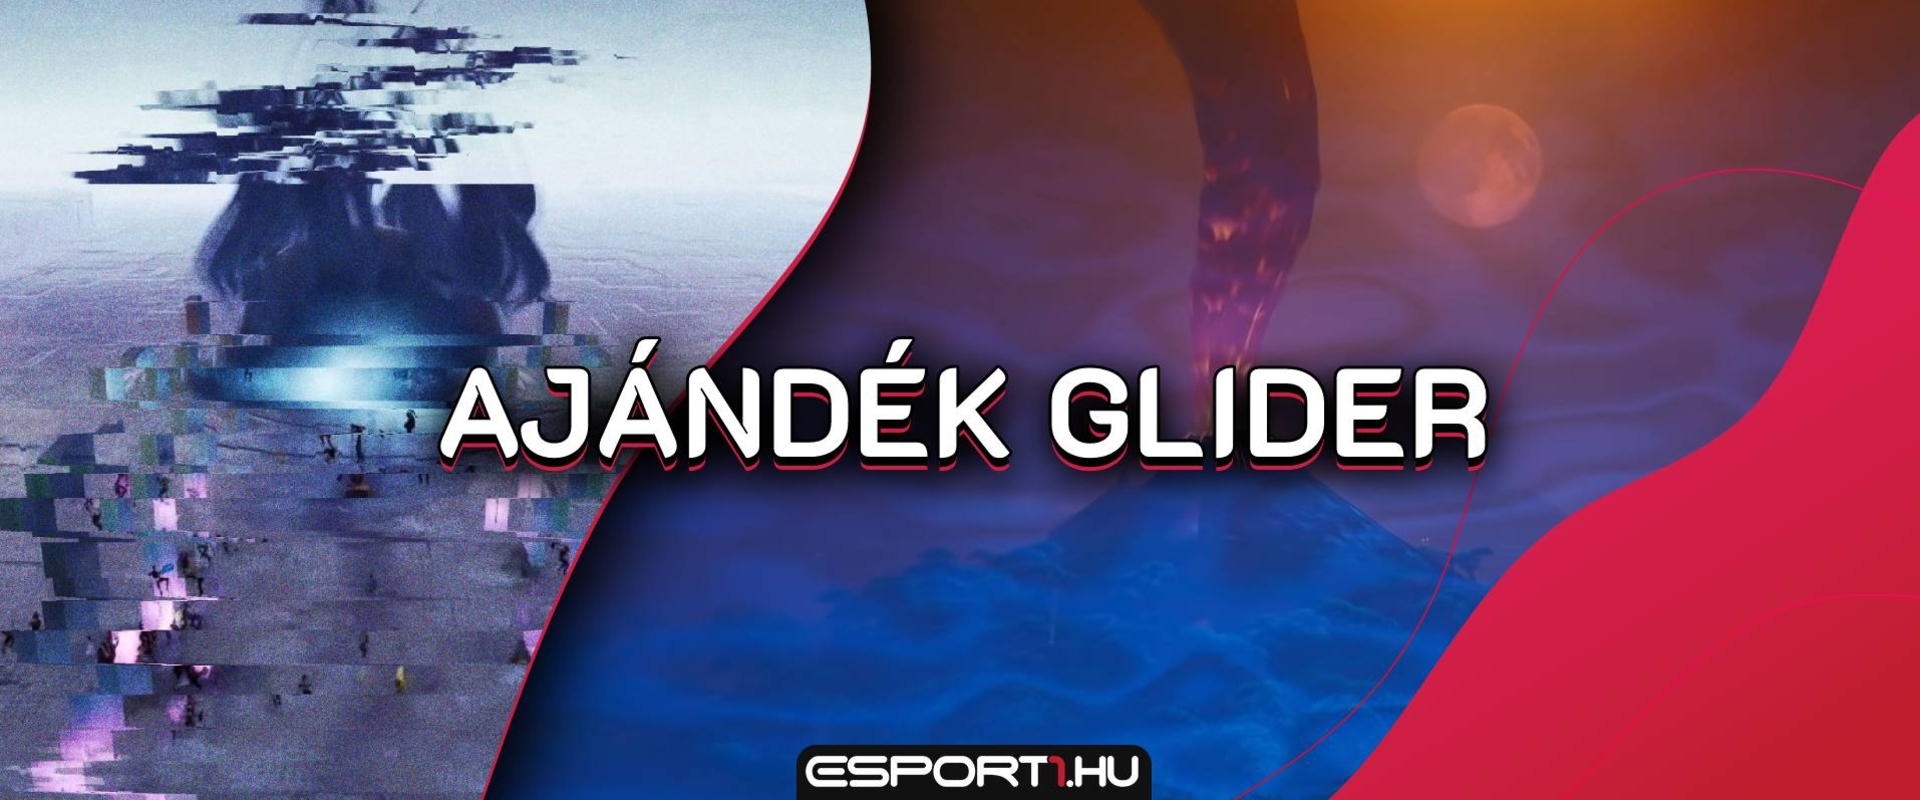 Ajándék Gliderrel kompenzál az Epic Games a hibásan működő Fortnite event miatt